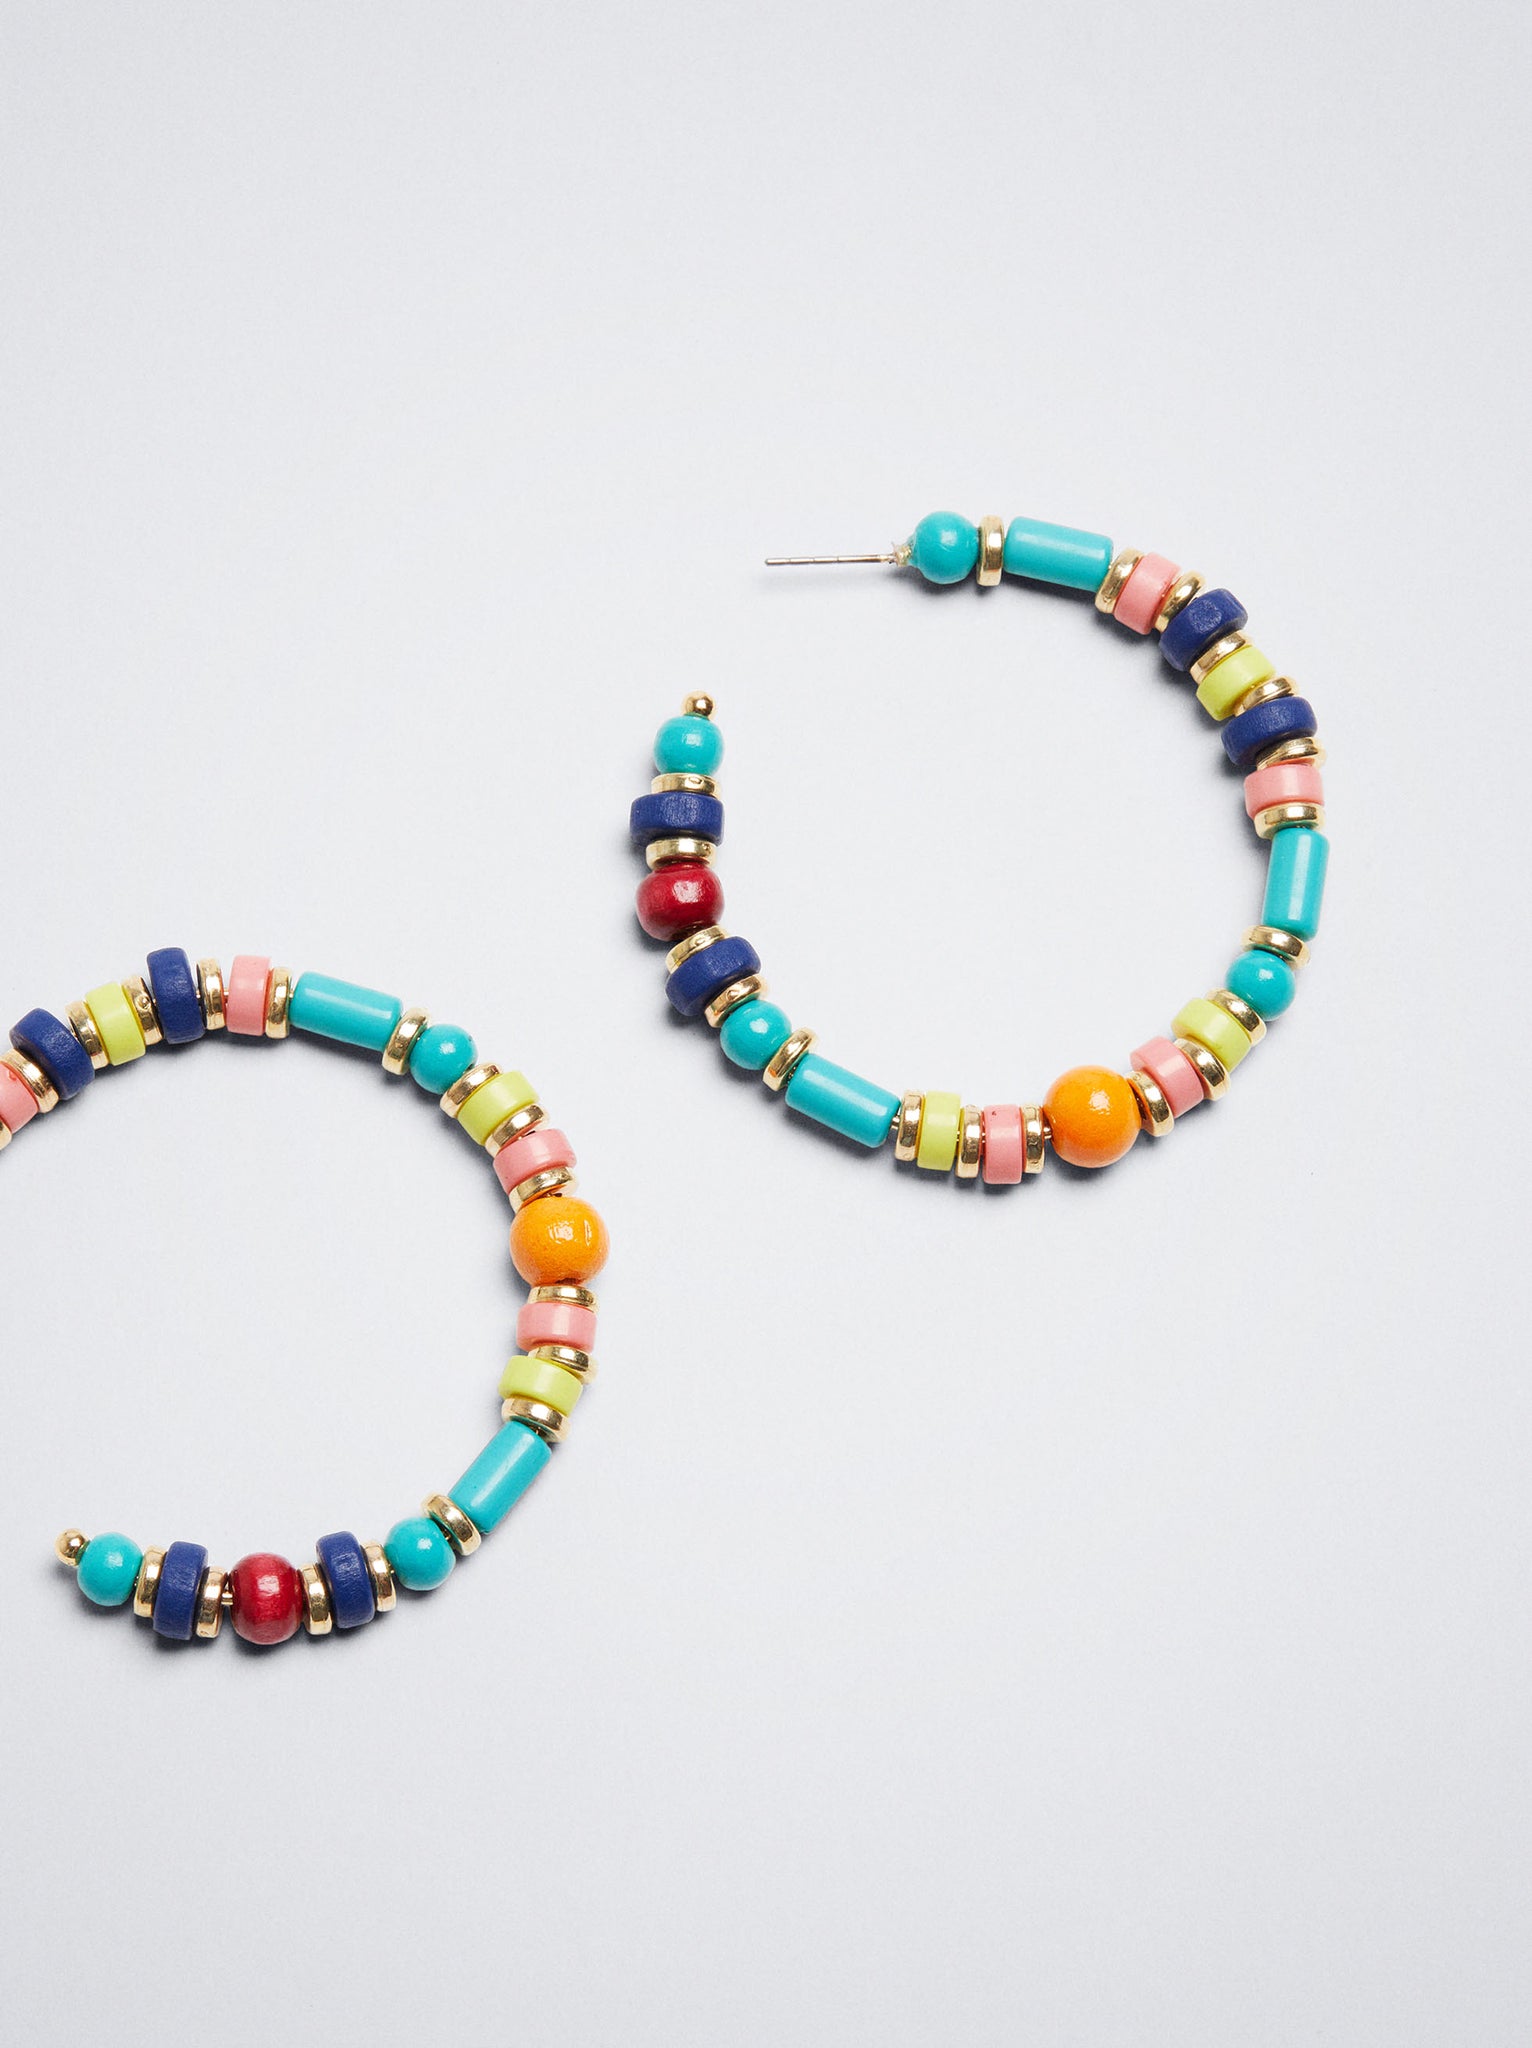 Multicoloured Hoop Earrings